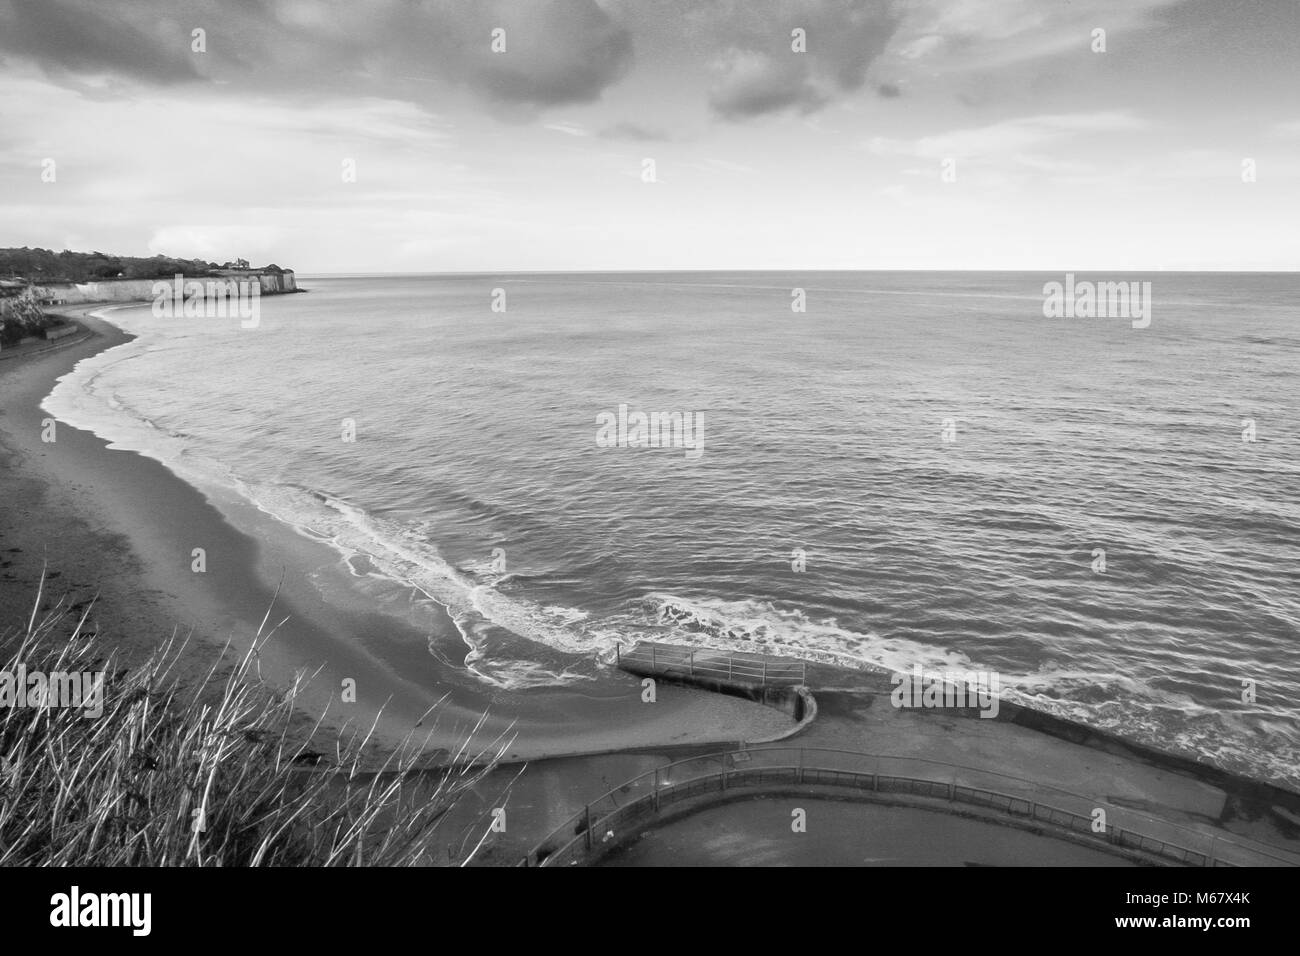 Il mare in tempesta e onde increspato immagine in bianco e nero di Broadstairs costa, Kent, Regno Unito Foto Stock